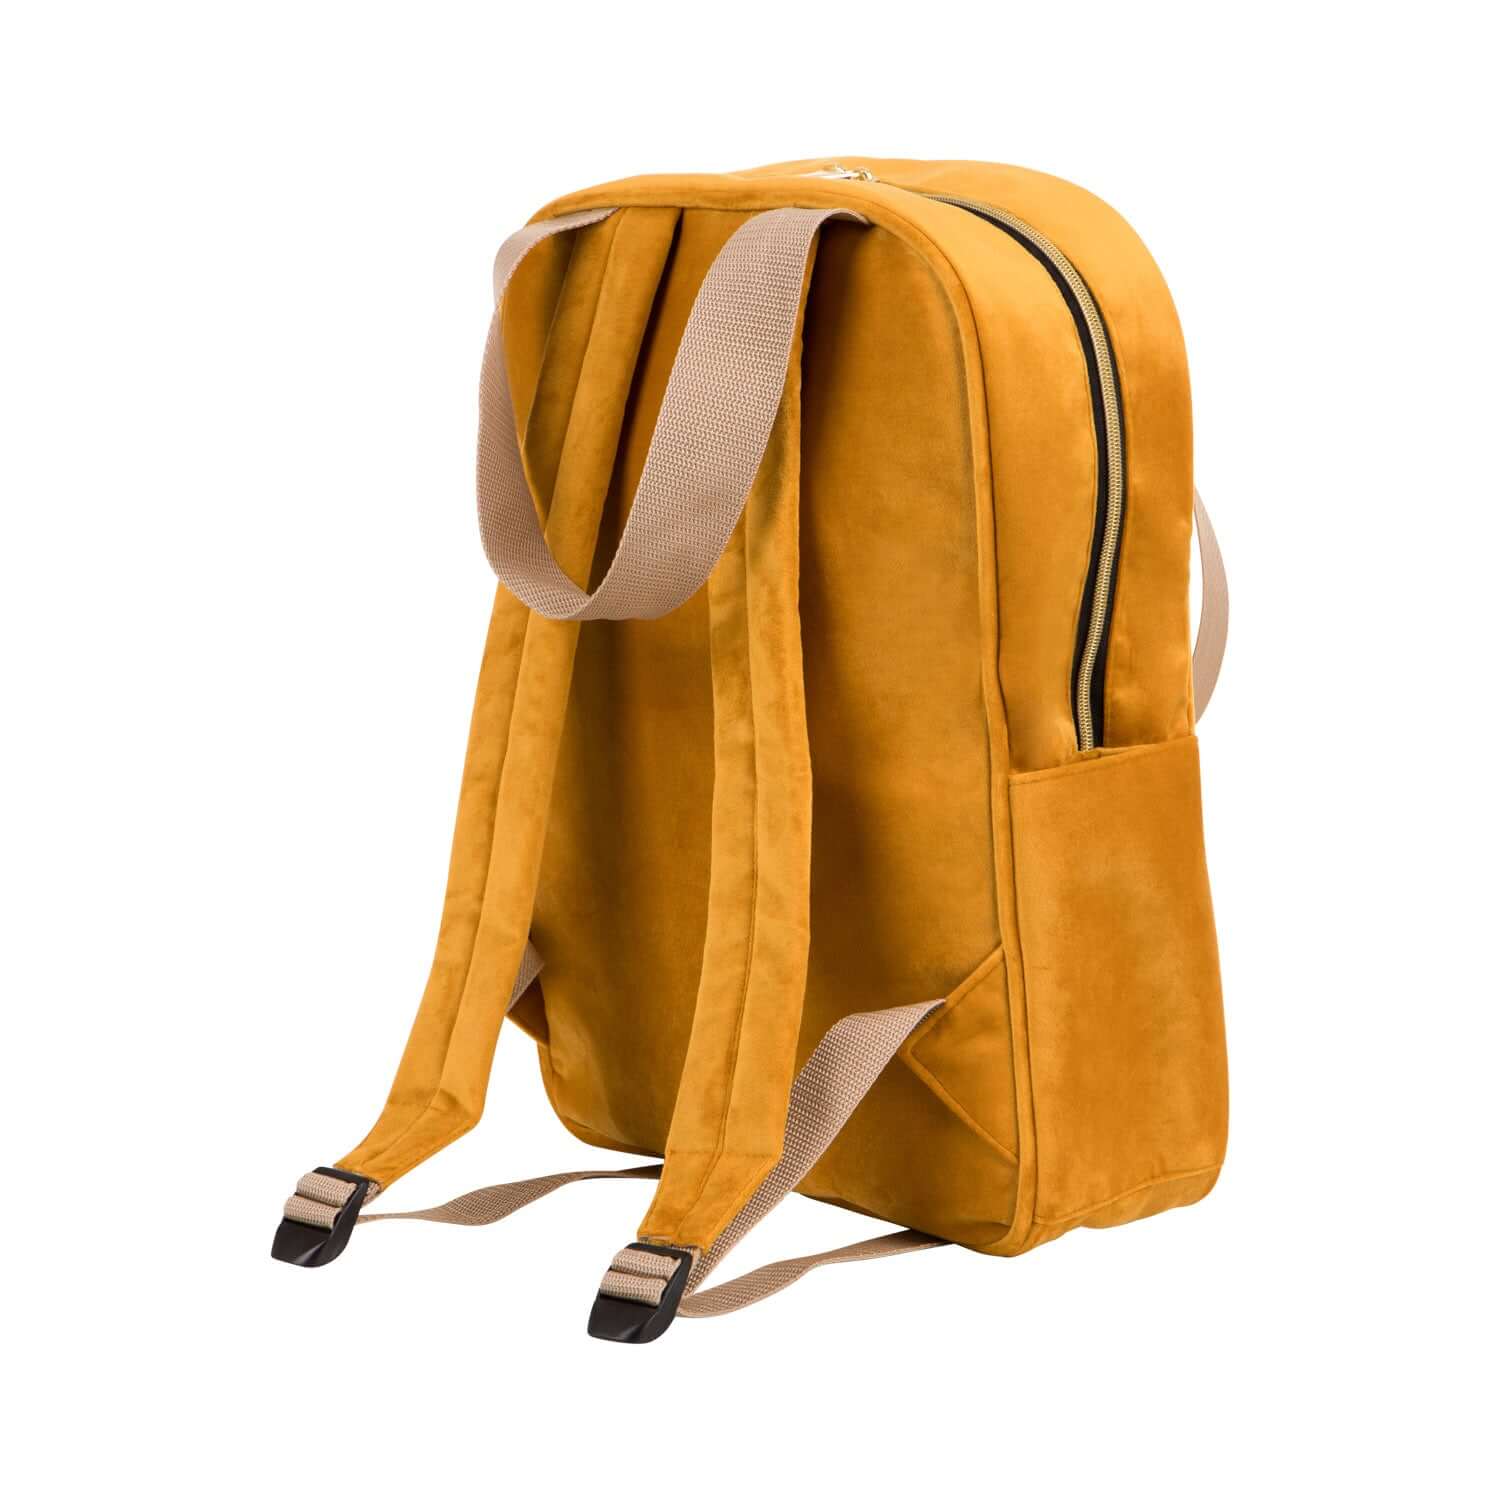 Duży welurowy plecak żółty od Bettys Home zdjęcie tyłu pojemny plecak do samolotu